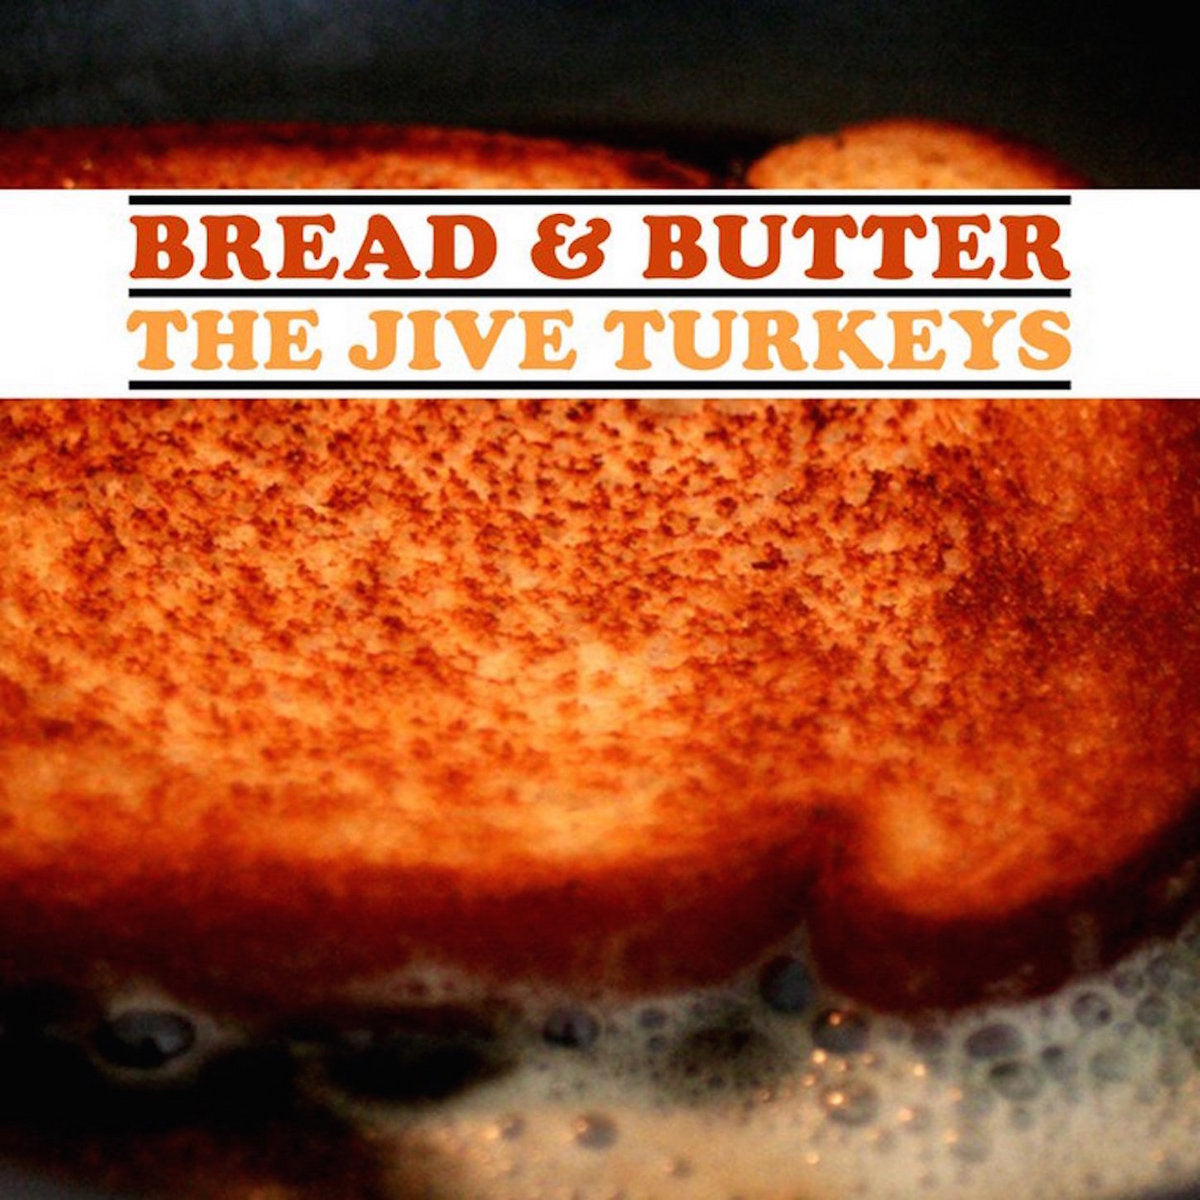 The Jive Turkeys - Bread & Butter (Vinyl LP)